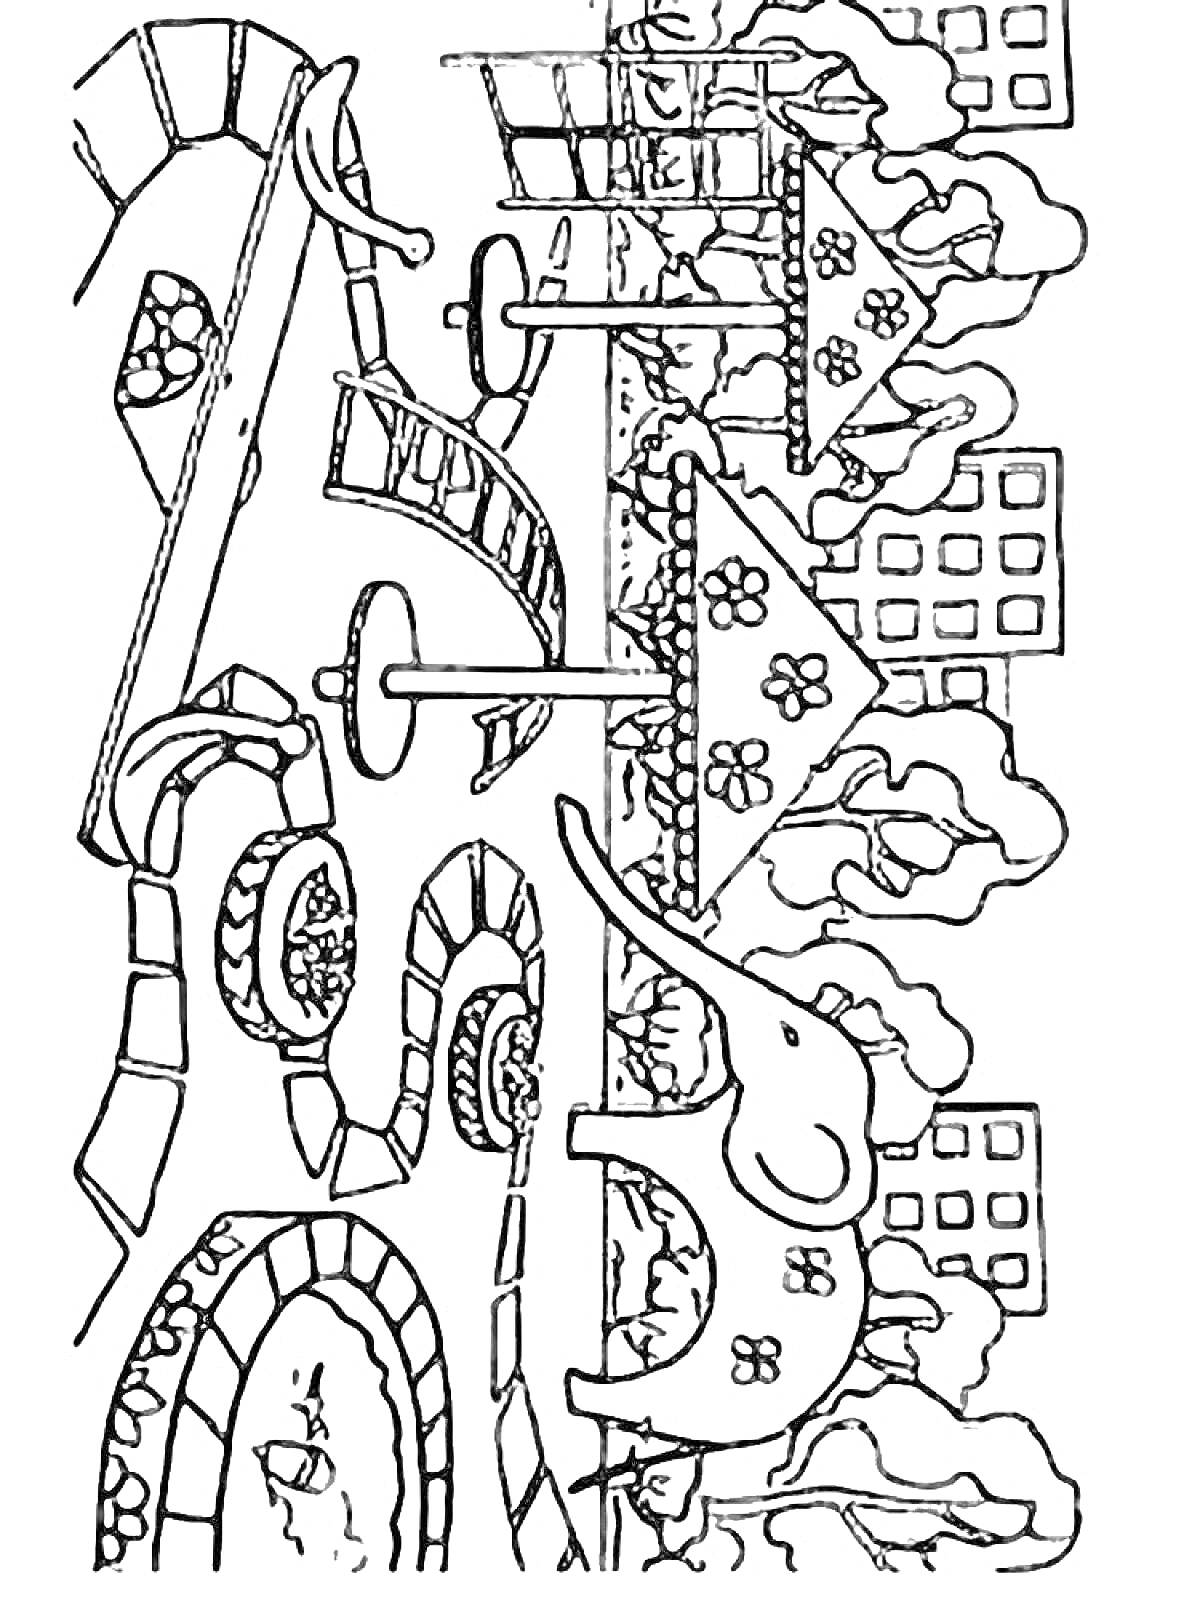 РаскраскаДетская площадка с горками, качелями, слоном, домиками и деревьями